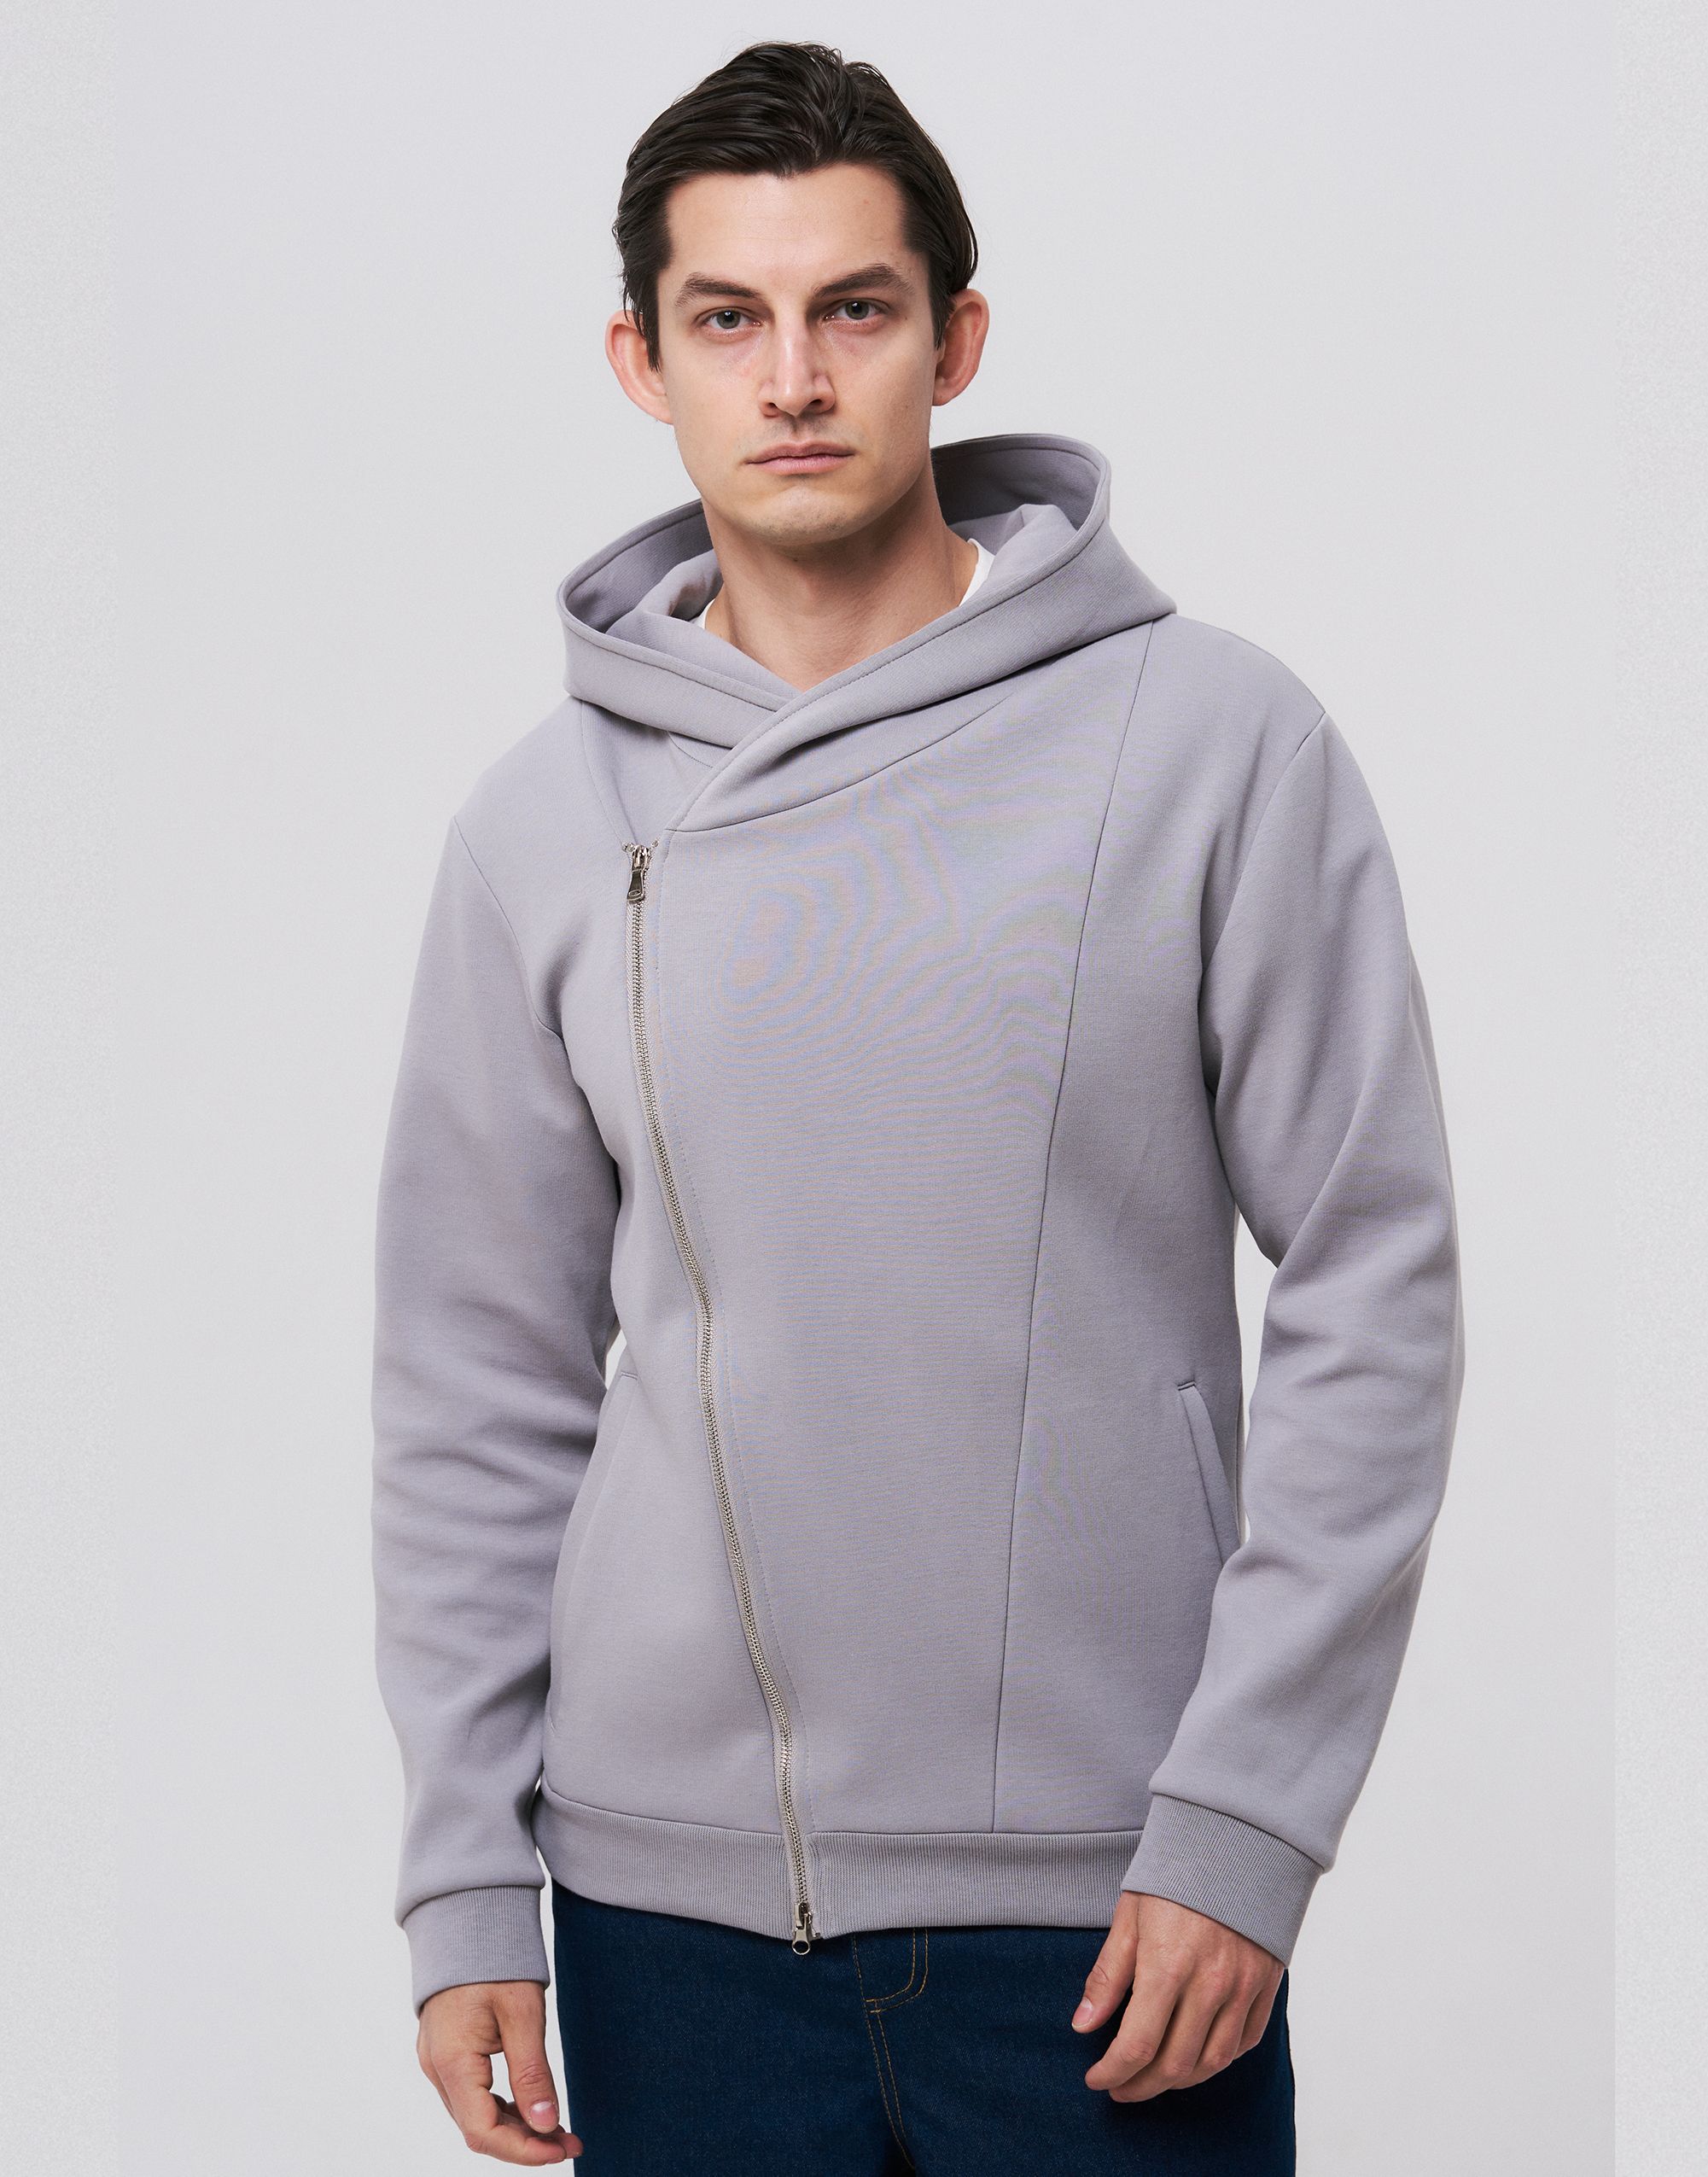 Men's hoodie, pattern №49